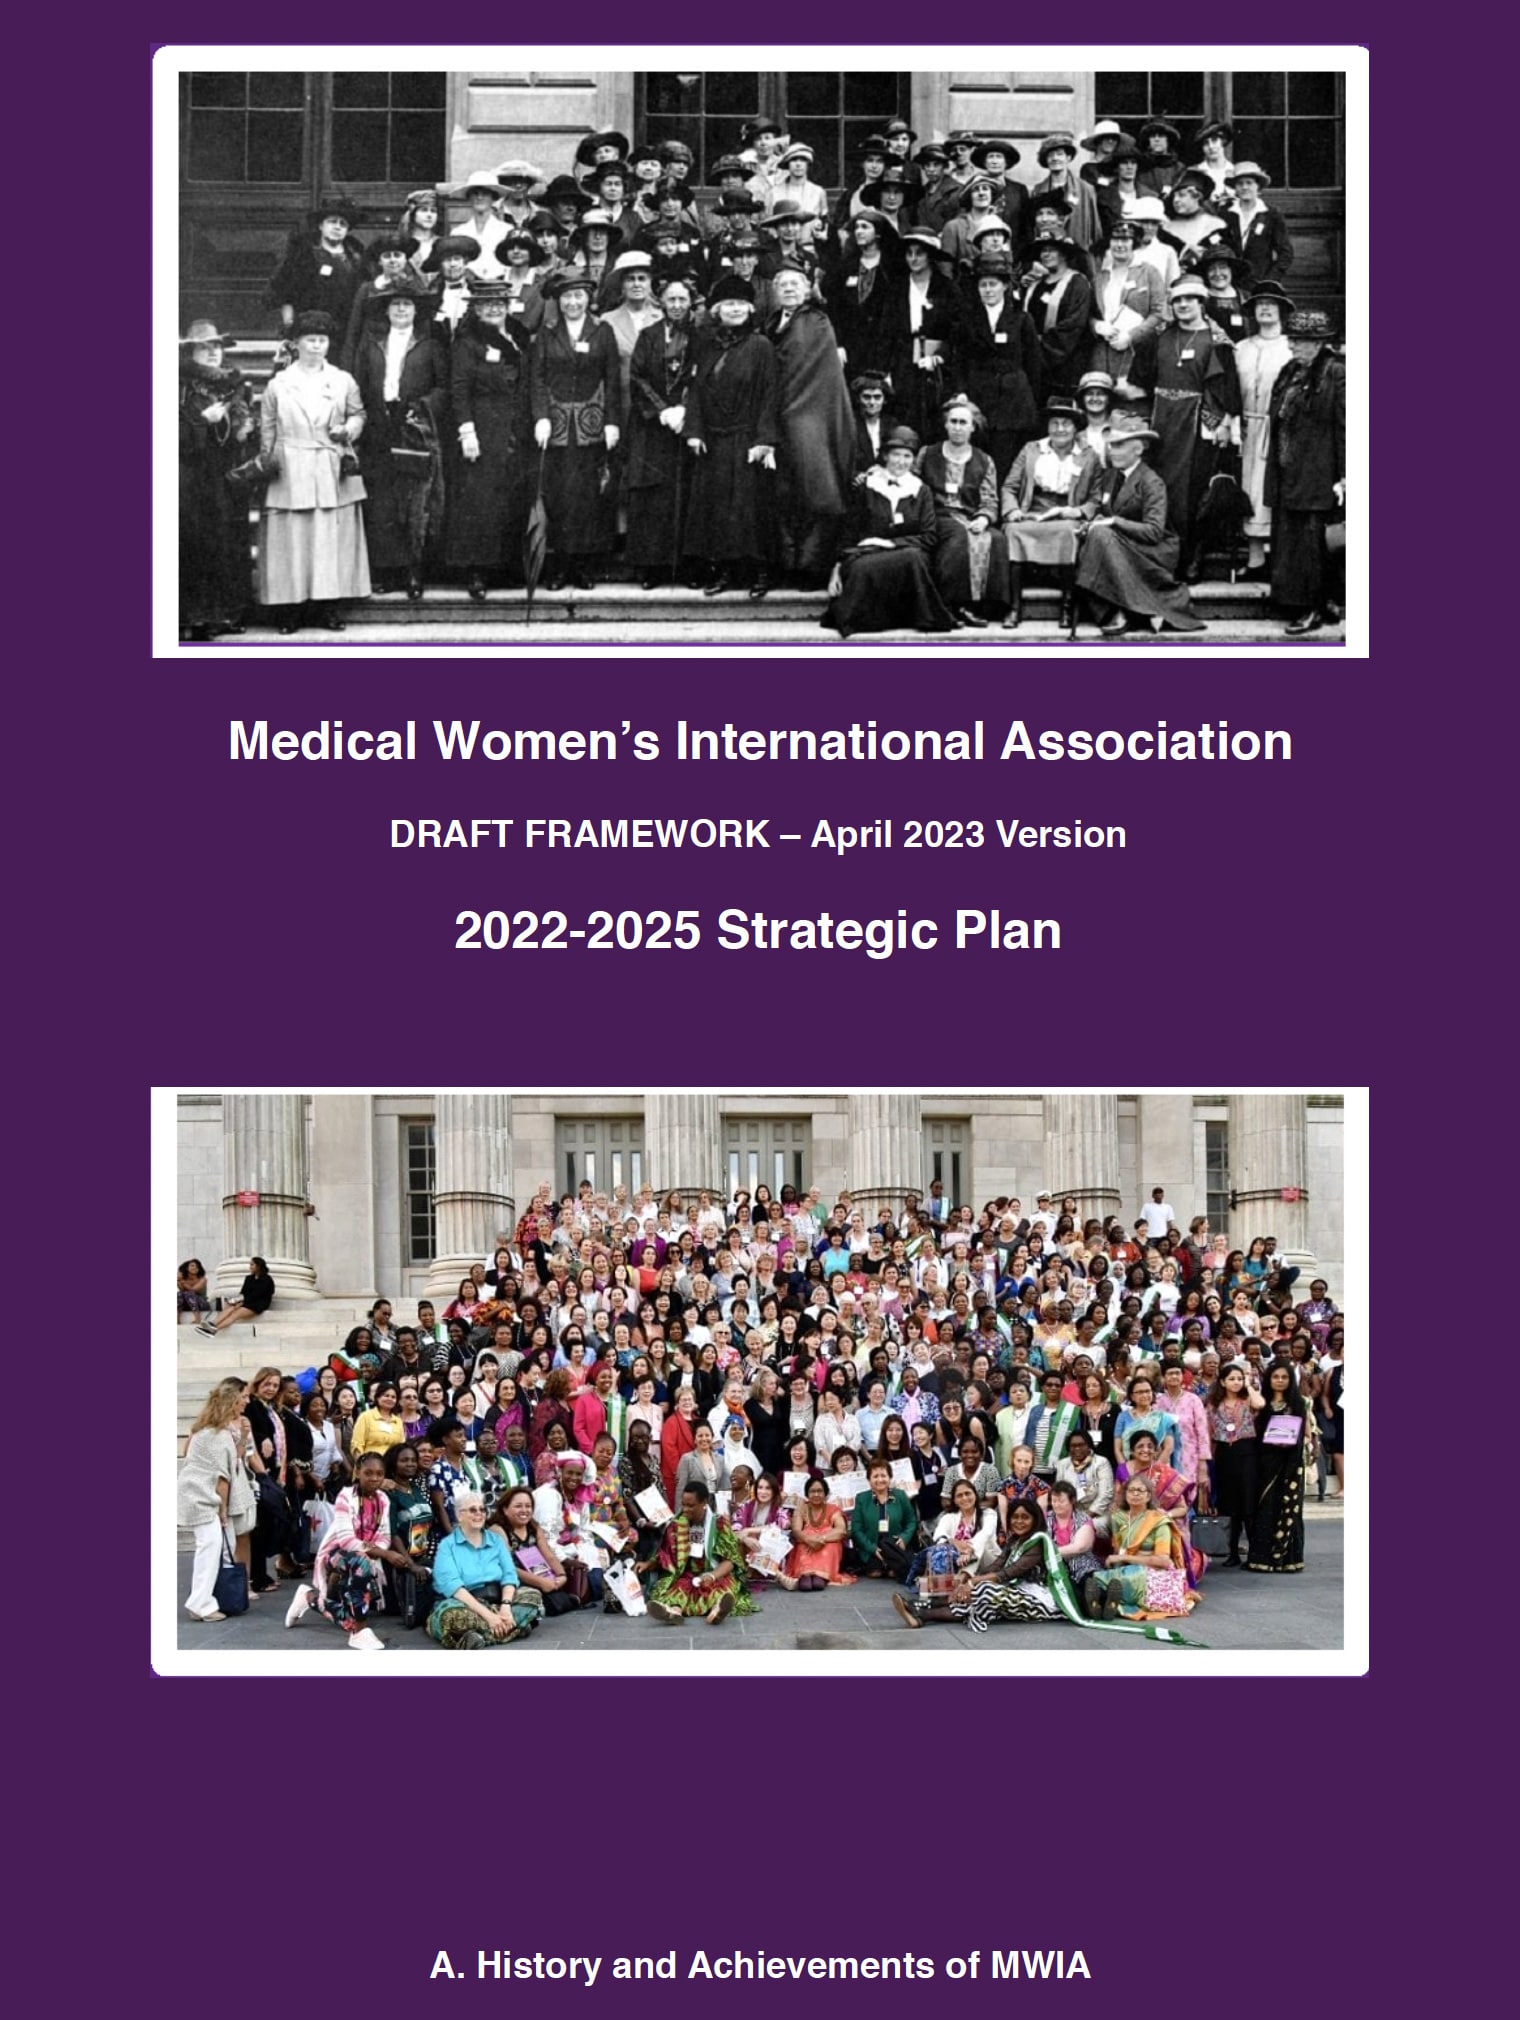 MWIA Strategic Plan 2022-2025